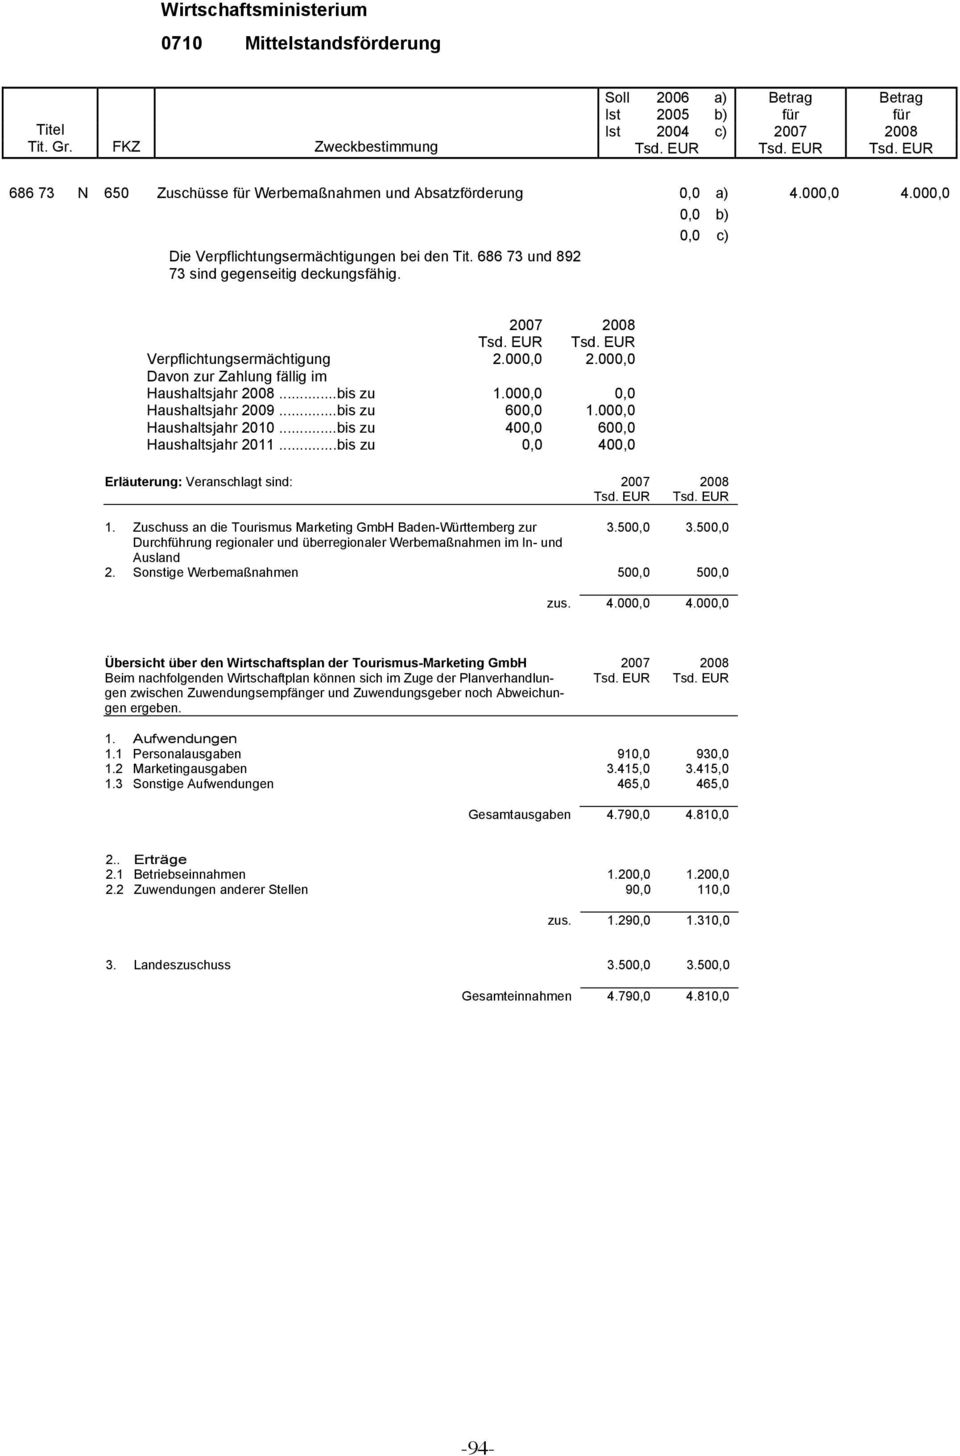 ..bis zu 0,0 400,0 Erläuterung: Veranschlagt sind: 2007 2008 1. Zuschuss an die Tourismus Marketing GmbH Baden-Württemberg zur 3.500,0 3.